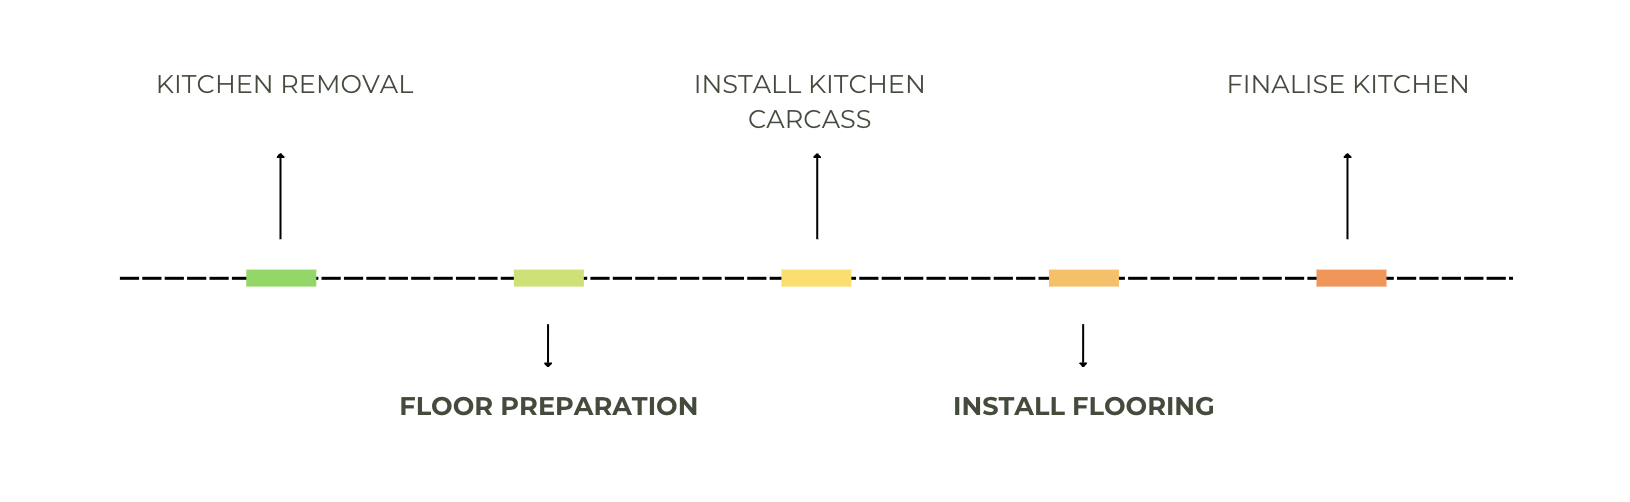 Kitchen-flooring-installation-timeline